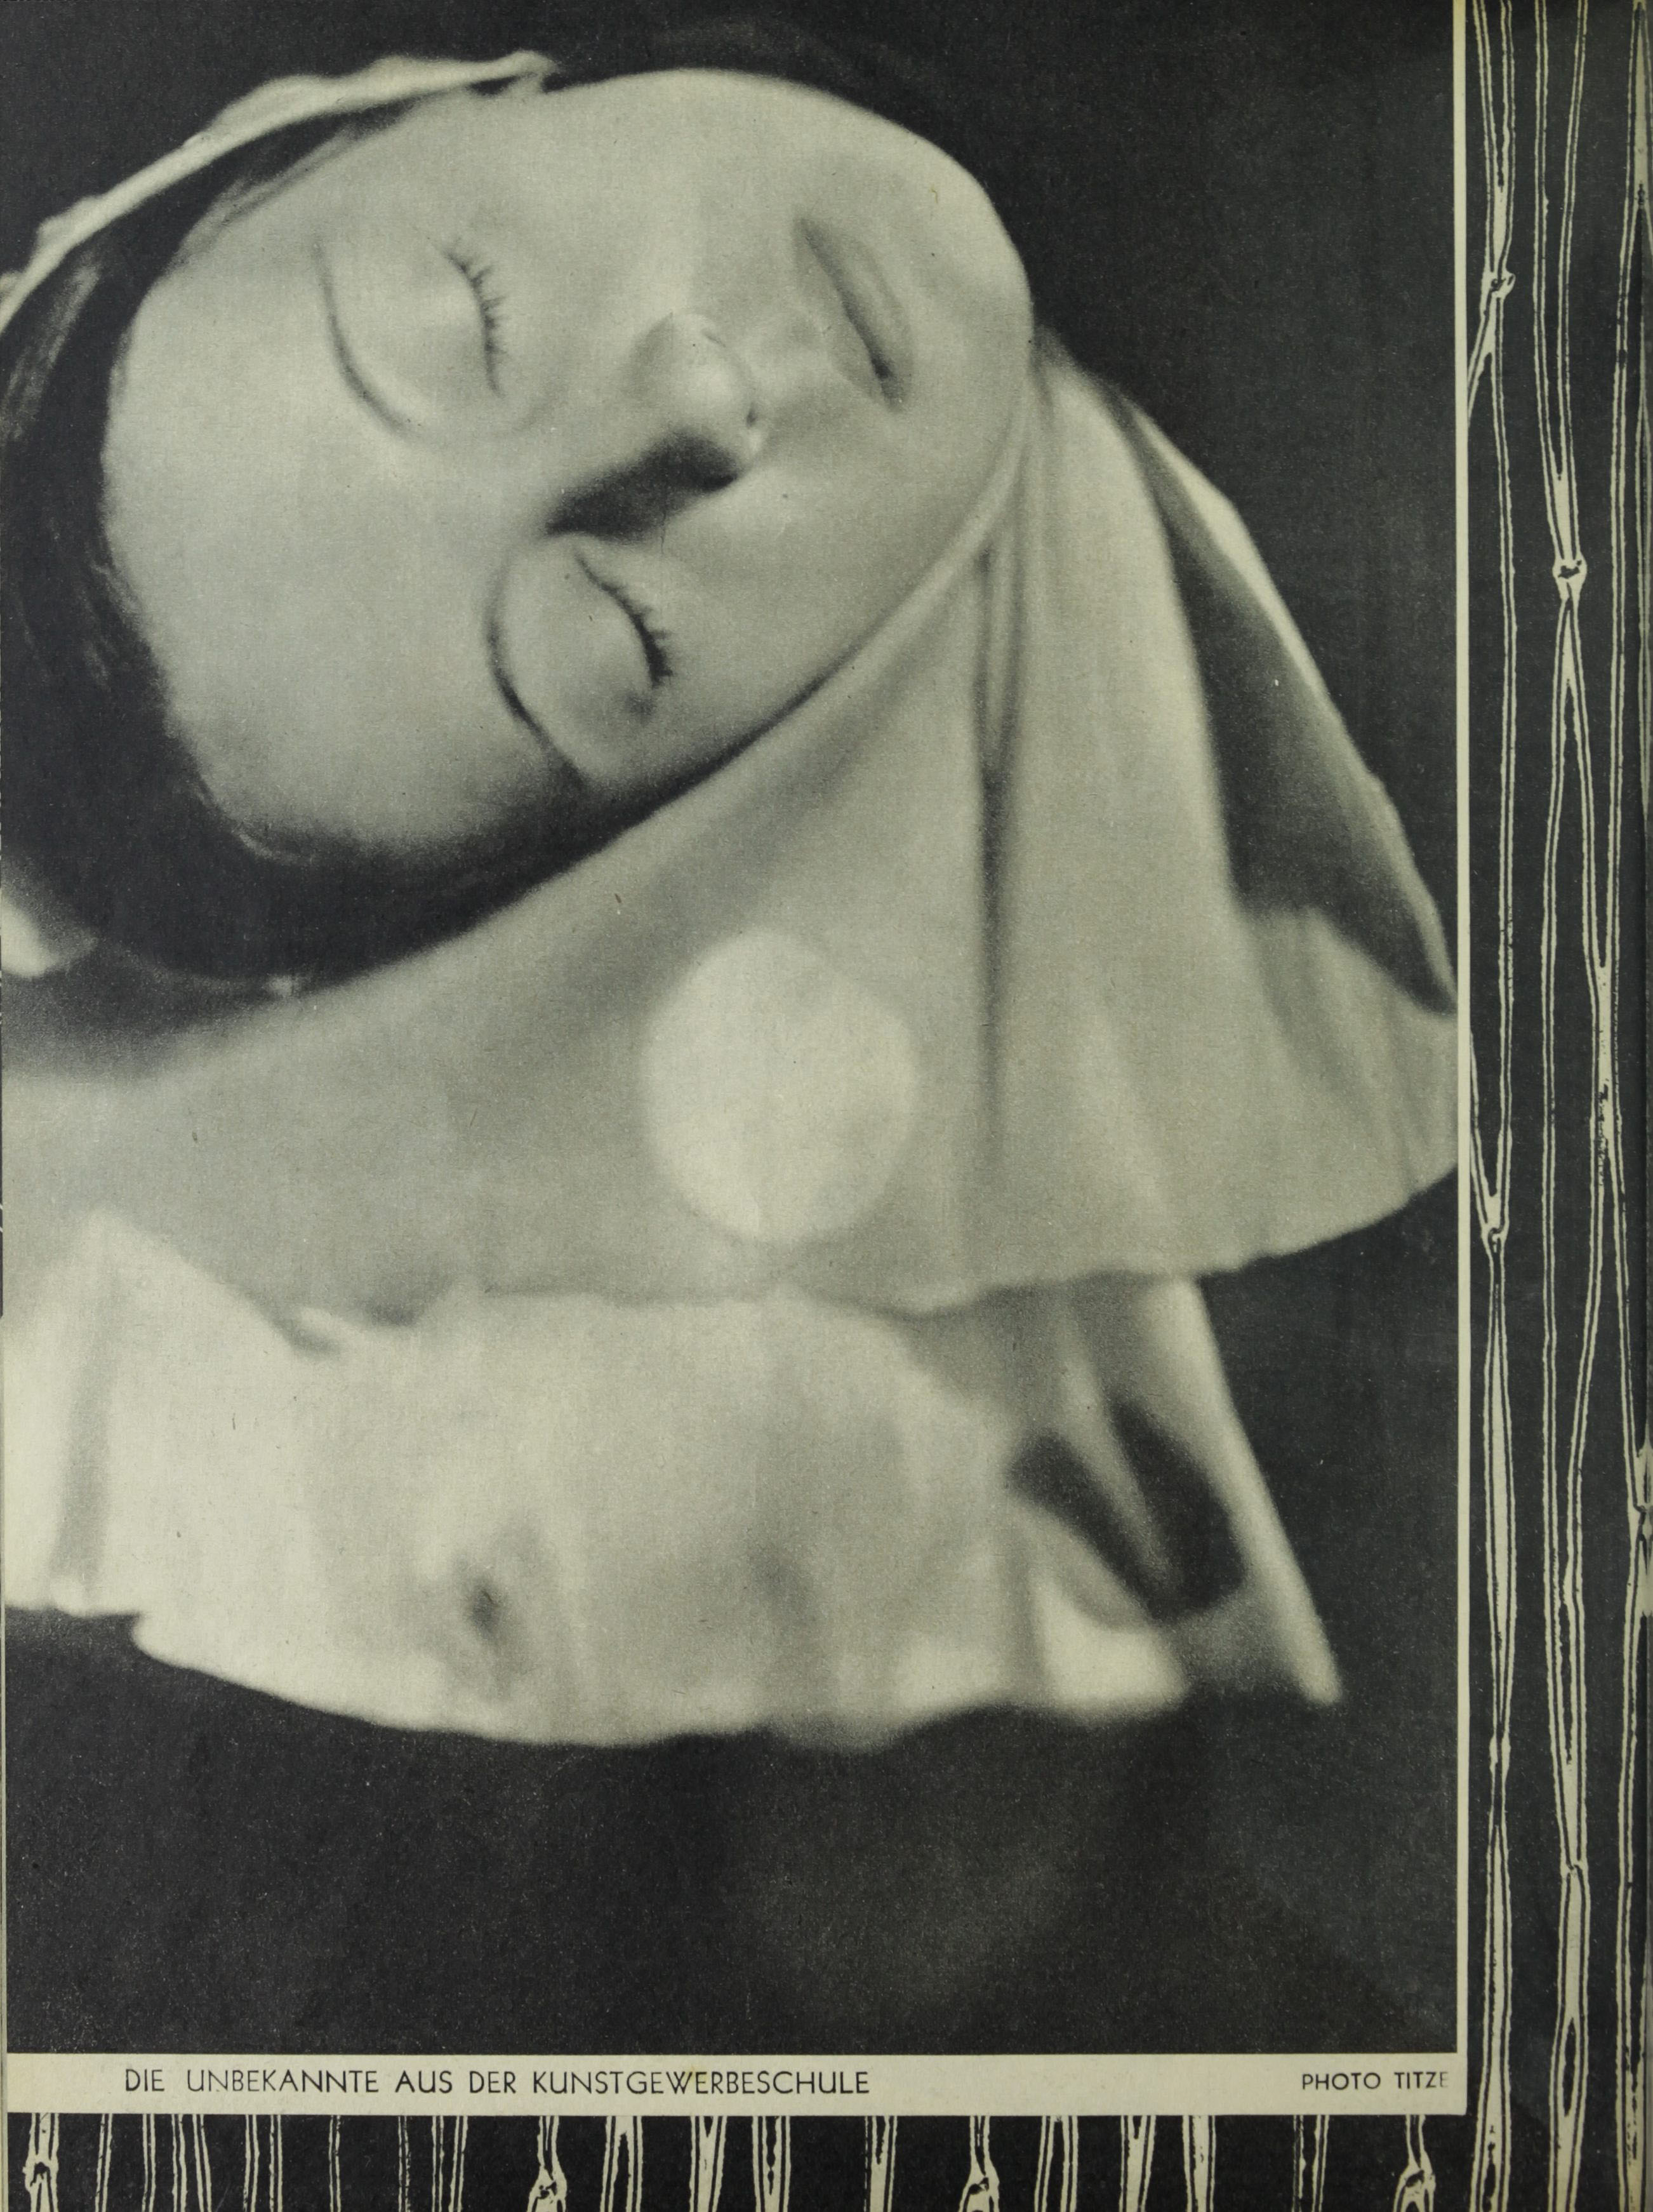 Die unbekannte aus der Kunstgewerbeschule - Photo Titzer. Die Bühne Heft 413, 1935 